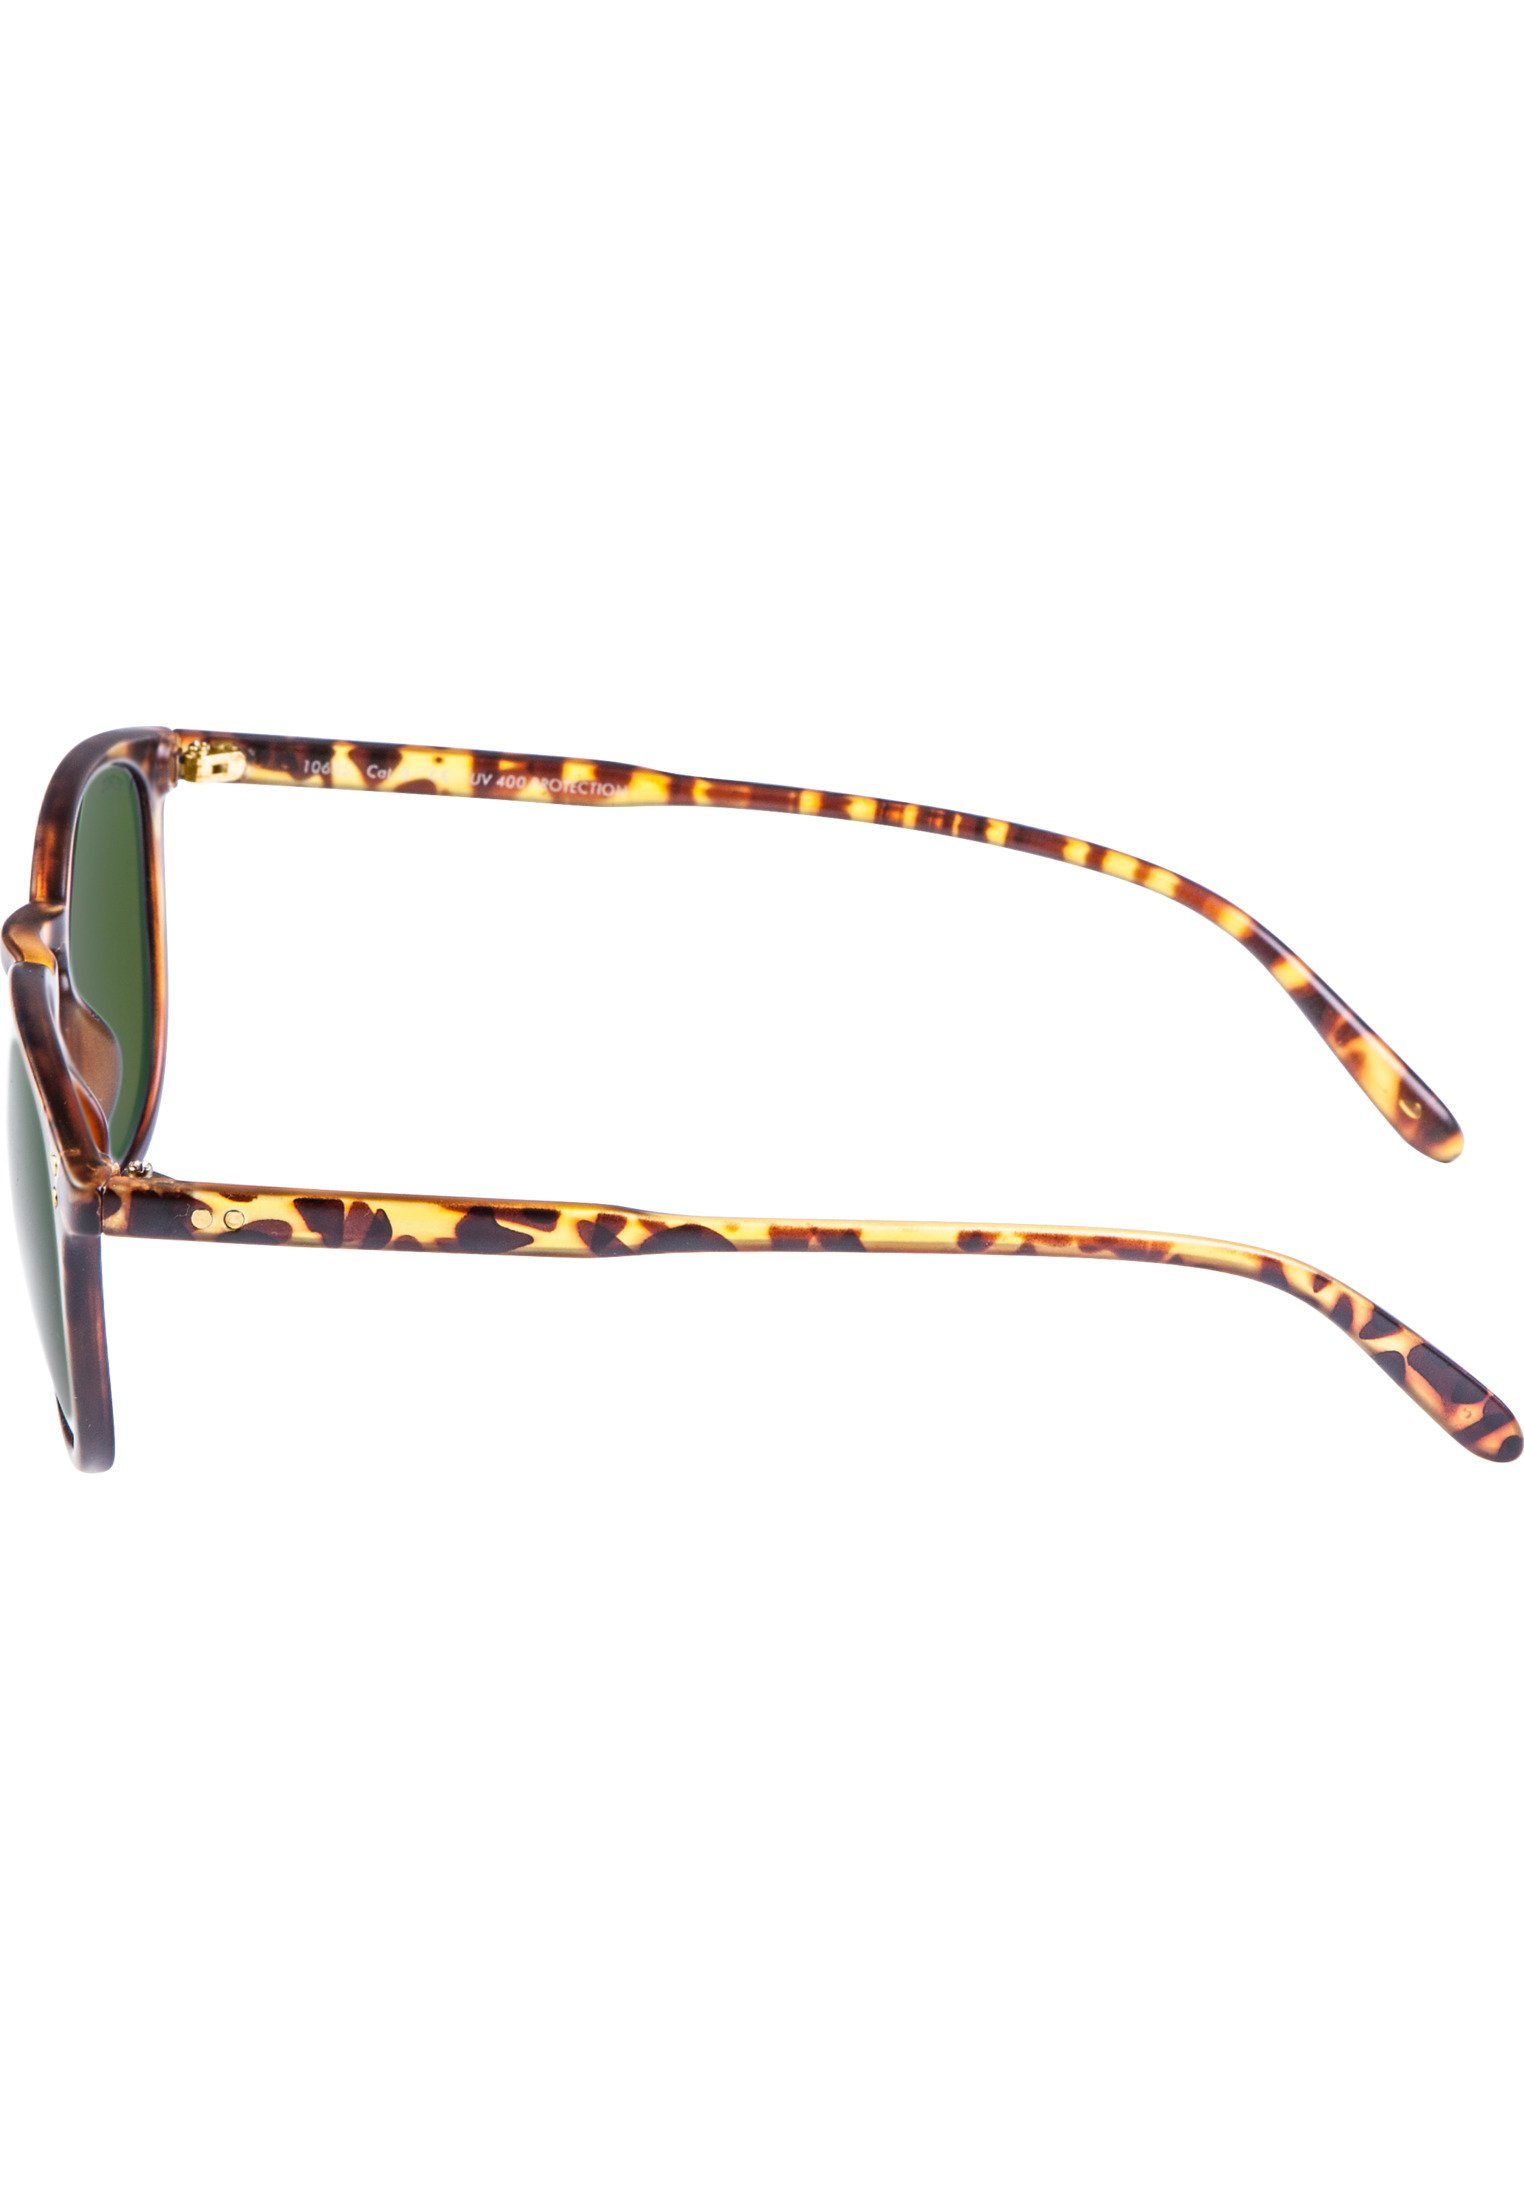 MSTRDS Sonnenbrille Accessoires Sunglasses havanna/green Arthur